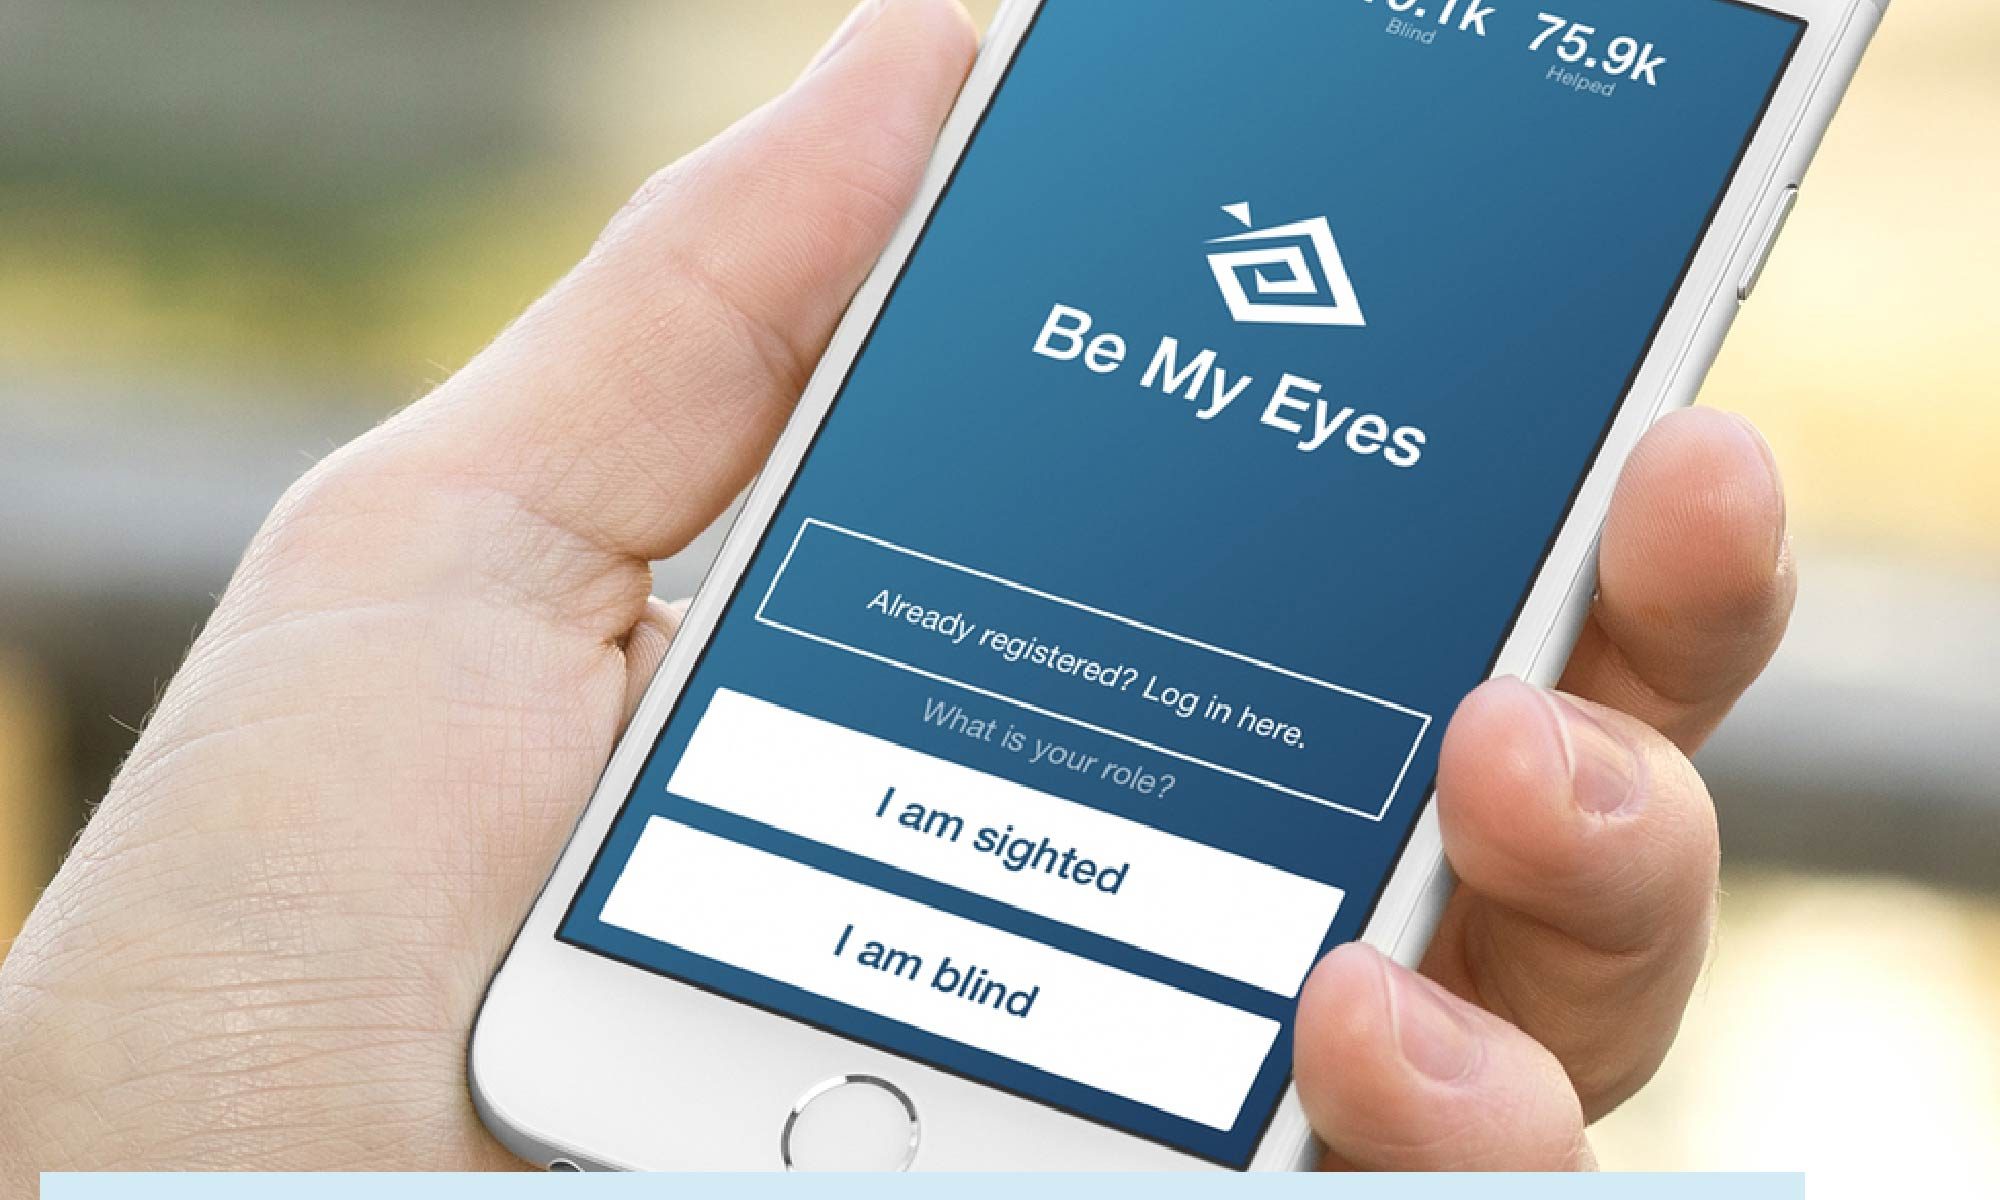 Imagem de uma mão segurando um smartphone com o app Be my Eyes aberto. Está escrito: "Apps para pessoas com deficiência visual: Be my Eyes" #tecnologiaassistiva e há a logo da Retina Brasil